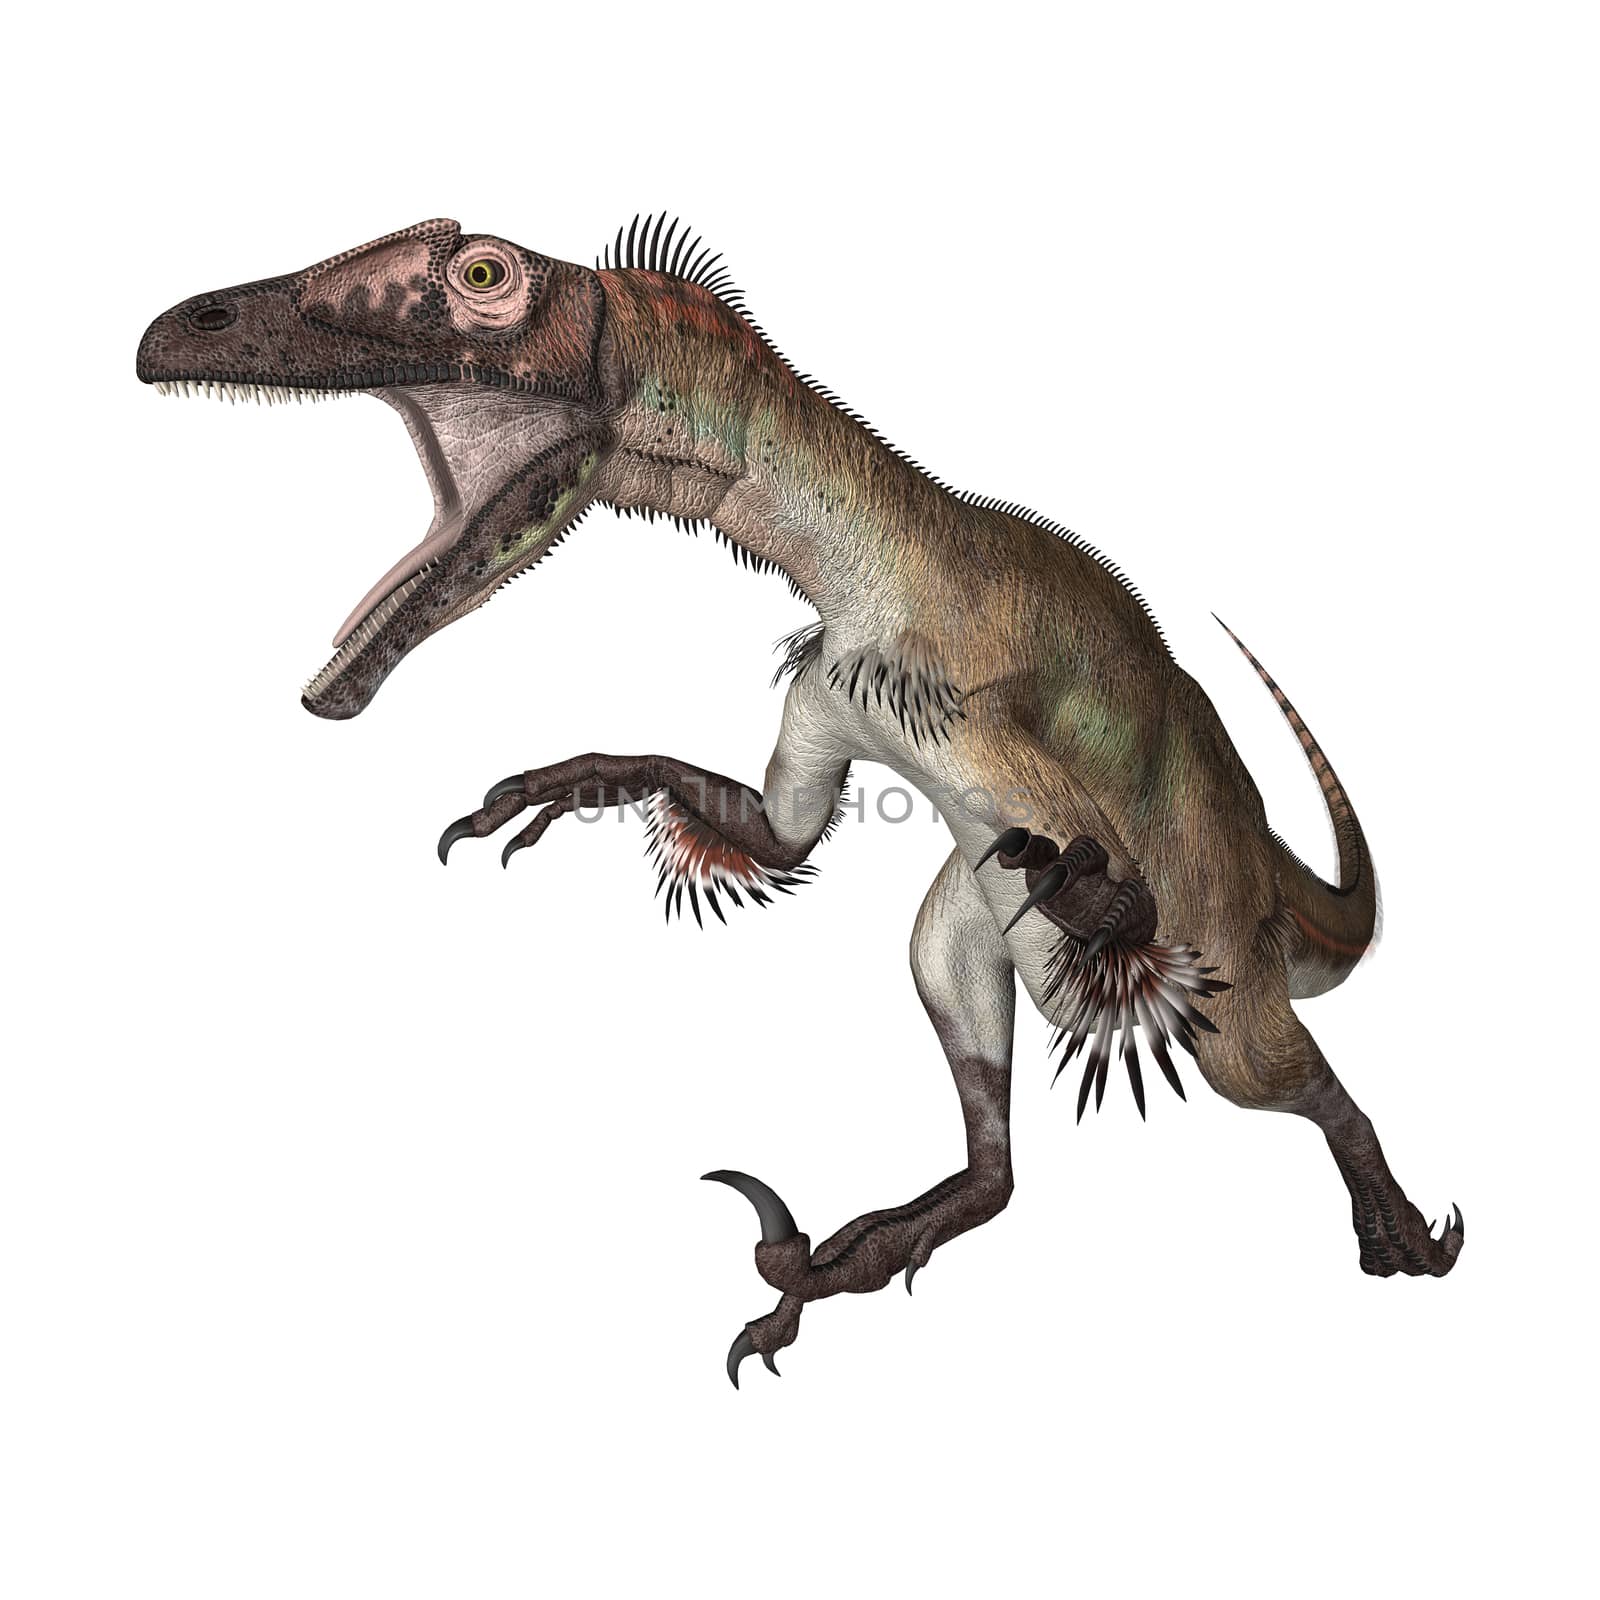 3D digital render of a dinosaur utahraptor running isolated on white background